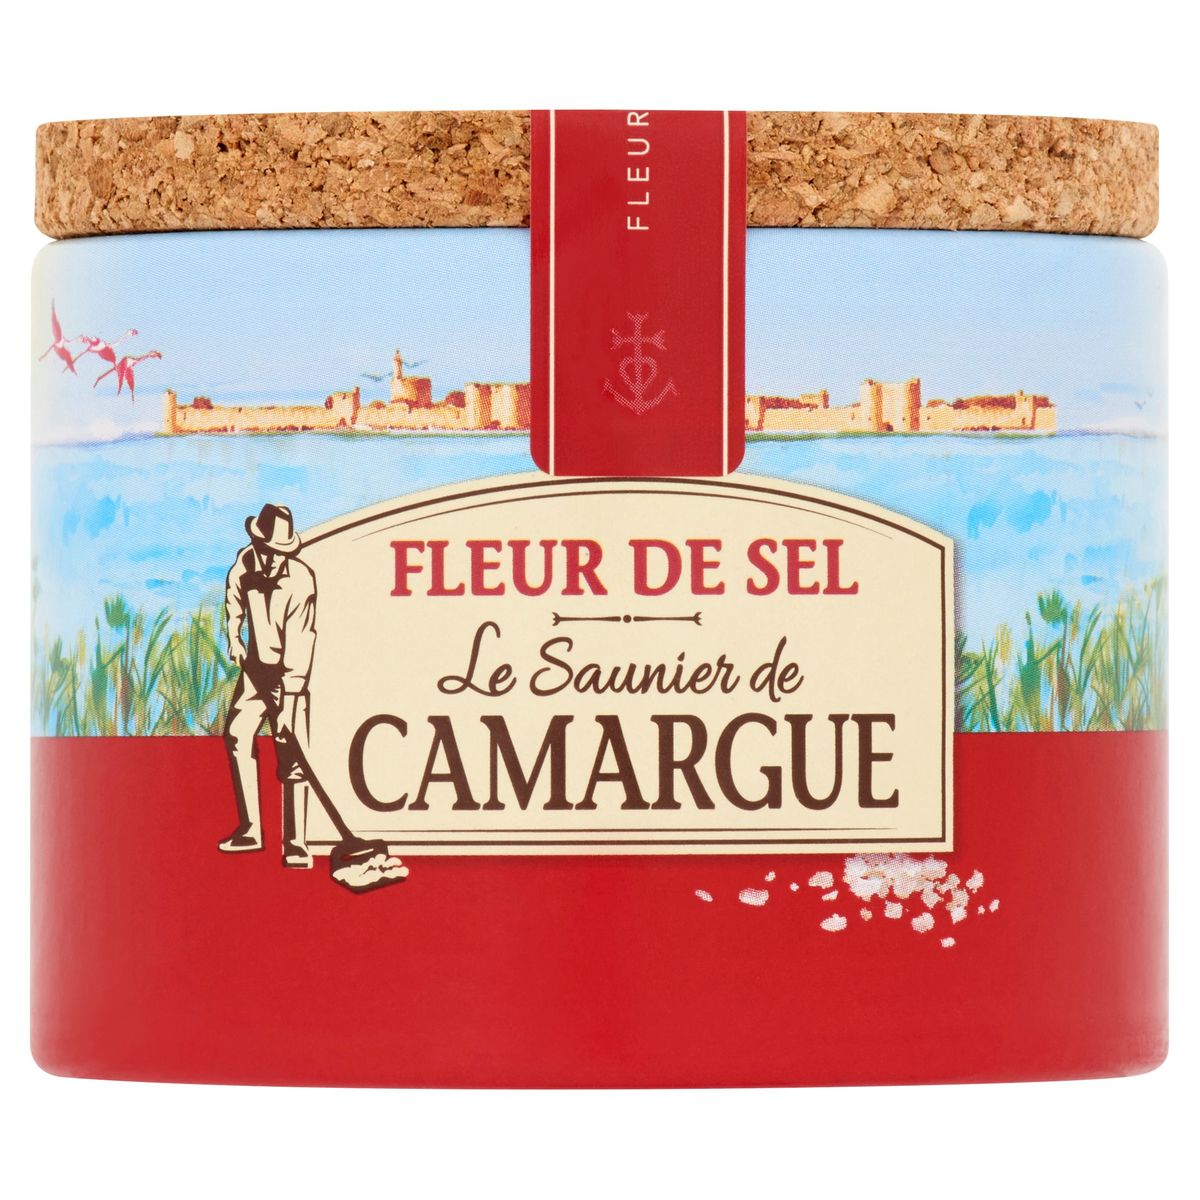 Le Saunier de Camargue Fleur de Sel 125 g